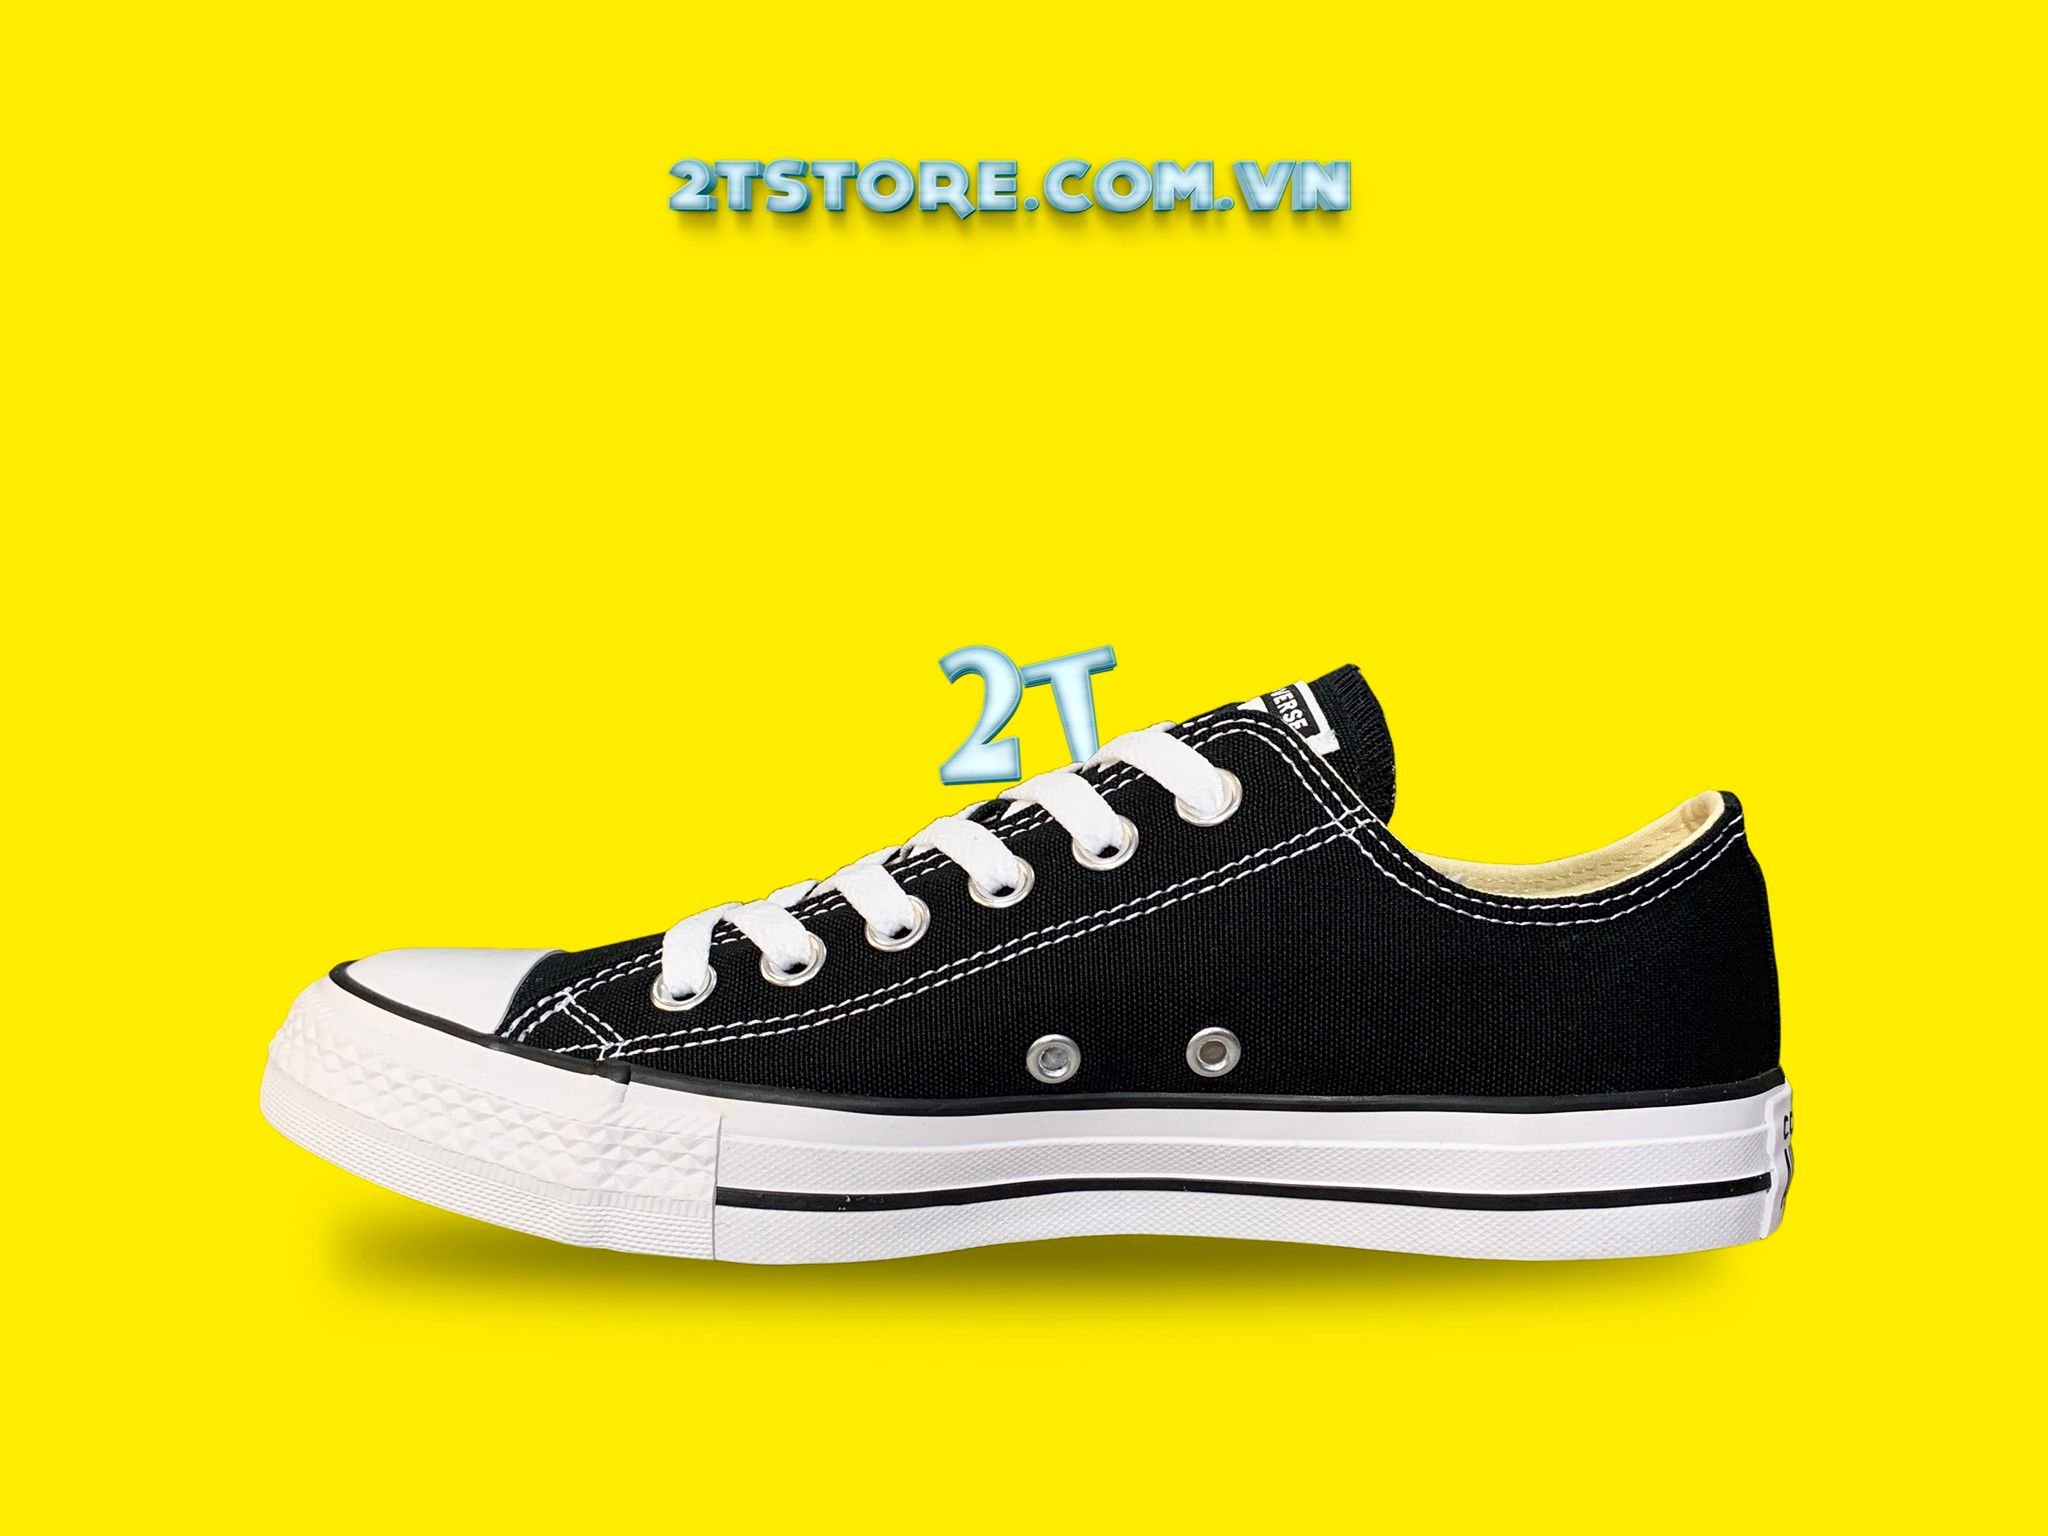 Giày Converse Classic Đen Cổ Thấp Chính Hãng – 2TStore